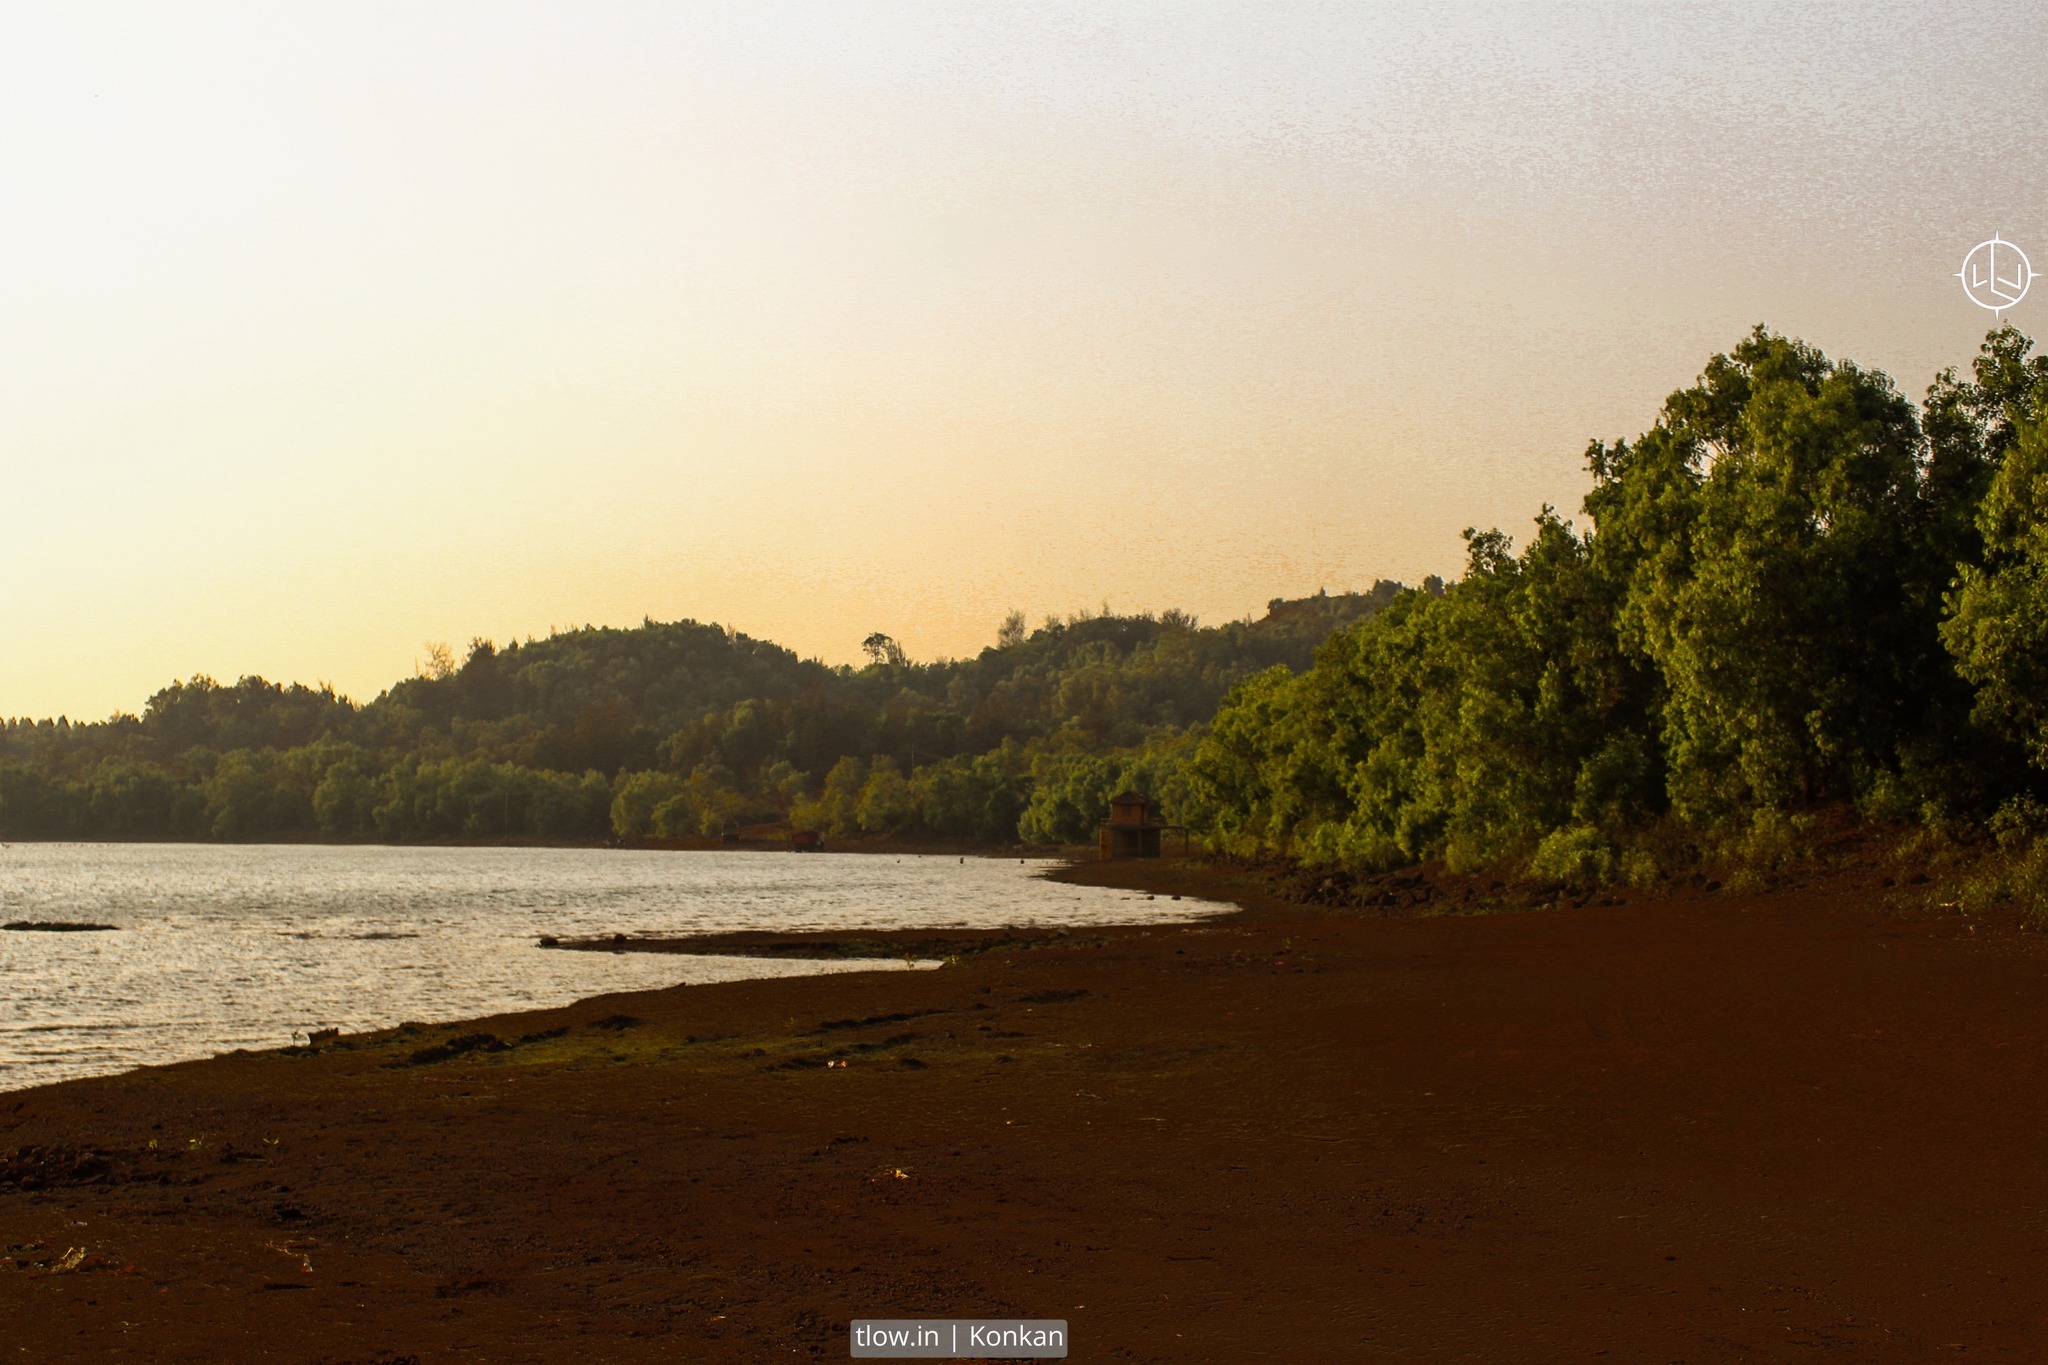 Konkan beach during sunset